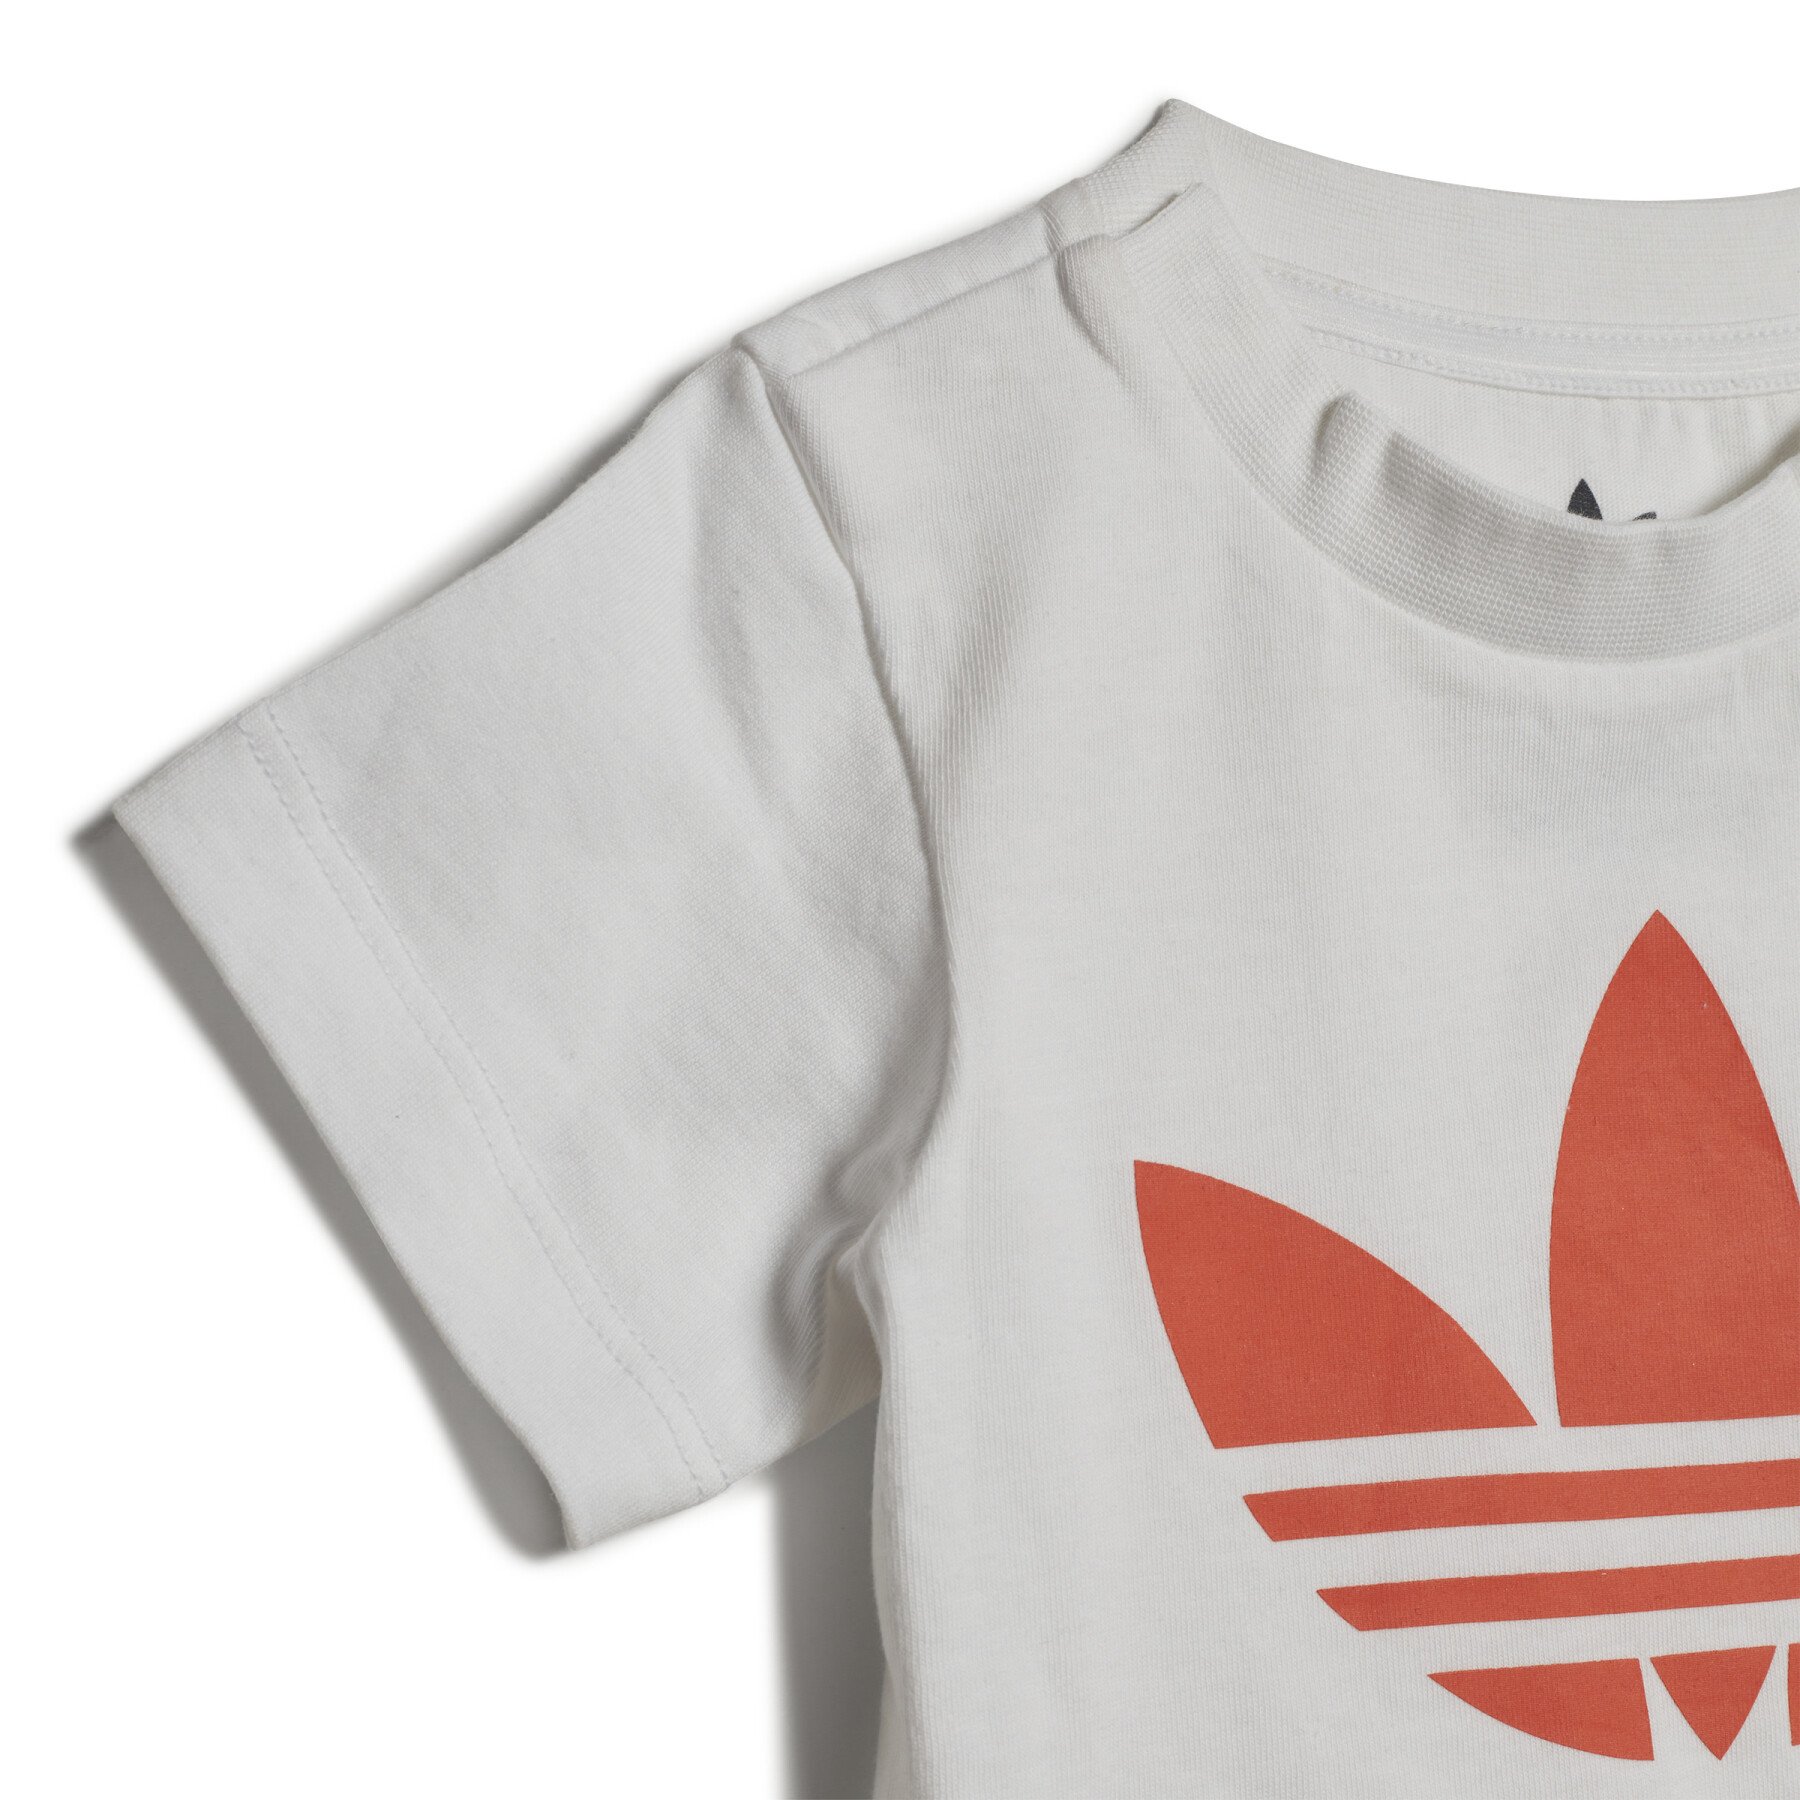 Set aus Camiseta und Shorts für Kinder adidas Originals